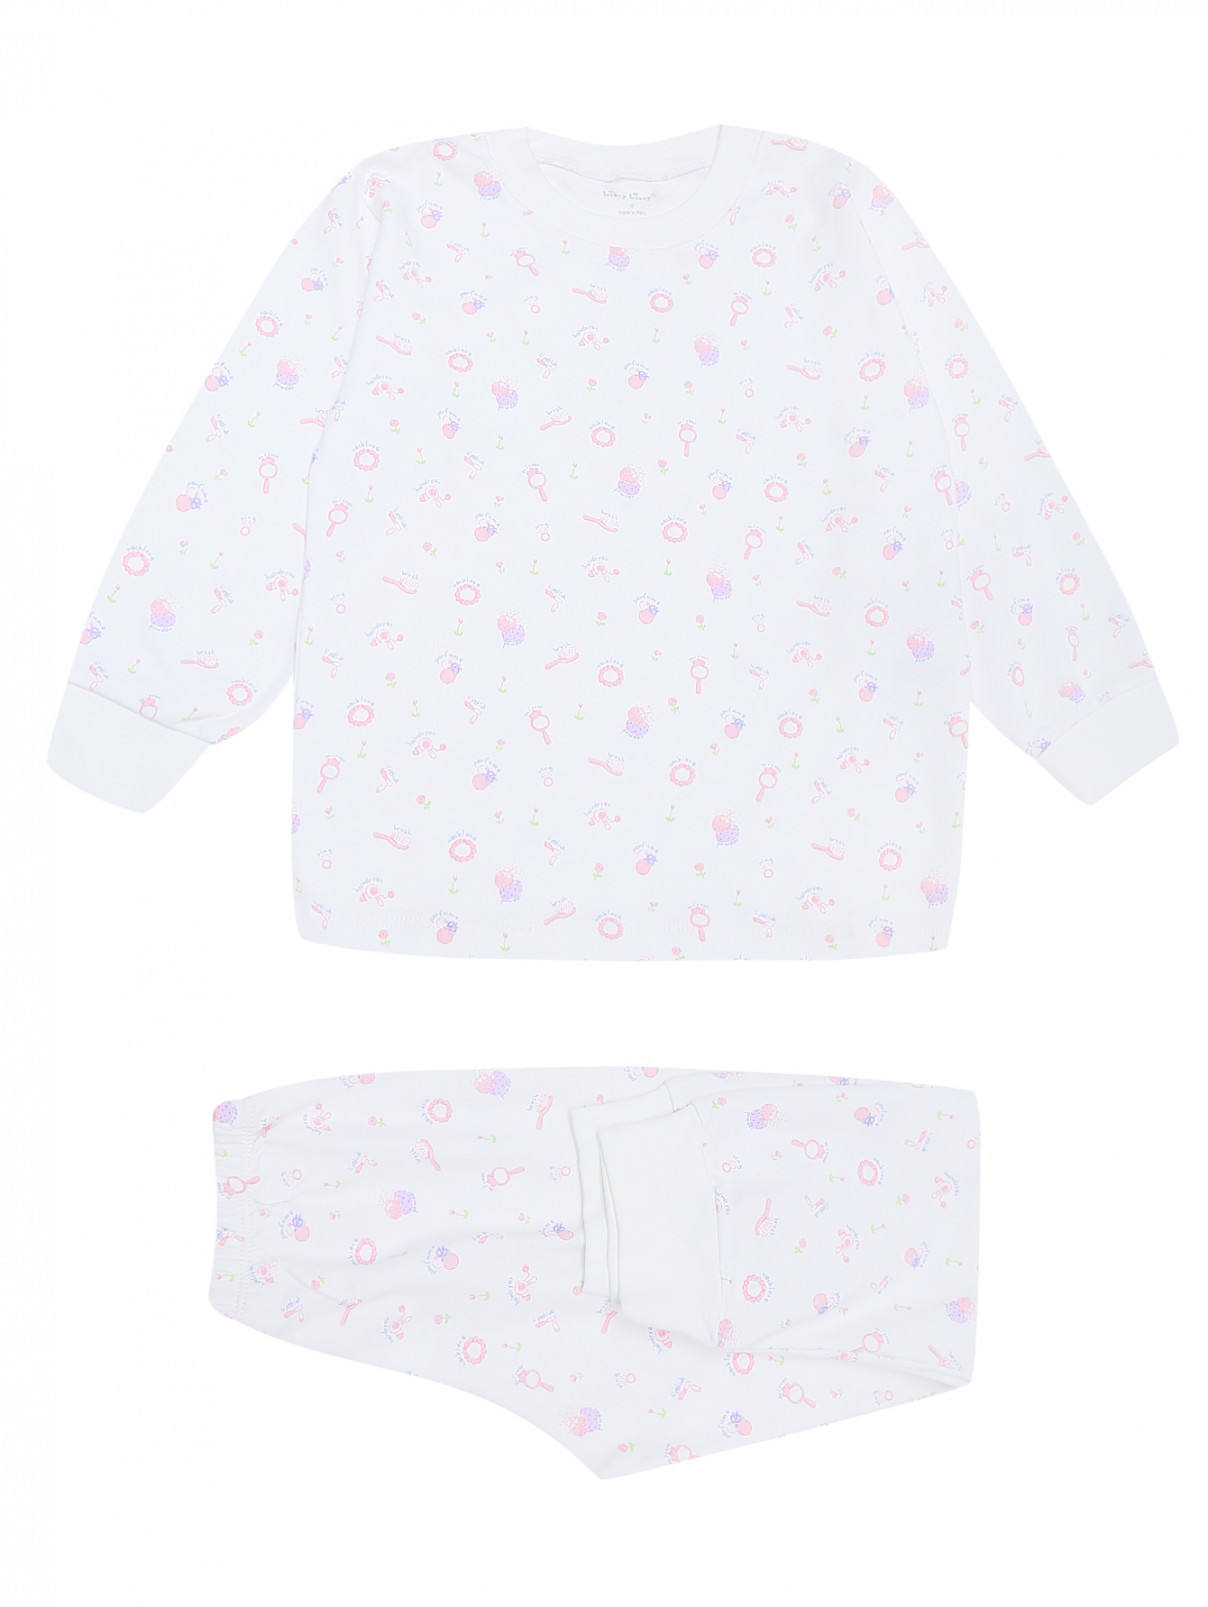 Пижама из хлопка с принтом Kissy Kissy  –  Общий вид  – Цвет:  Белый